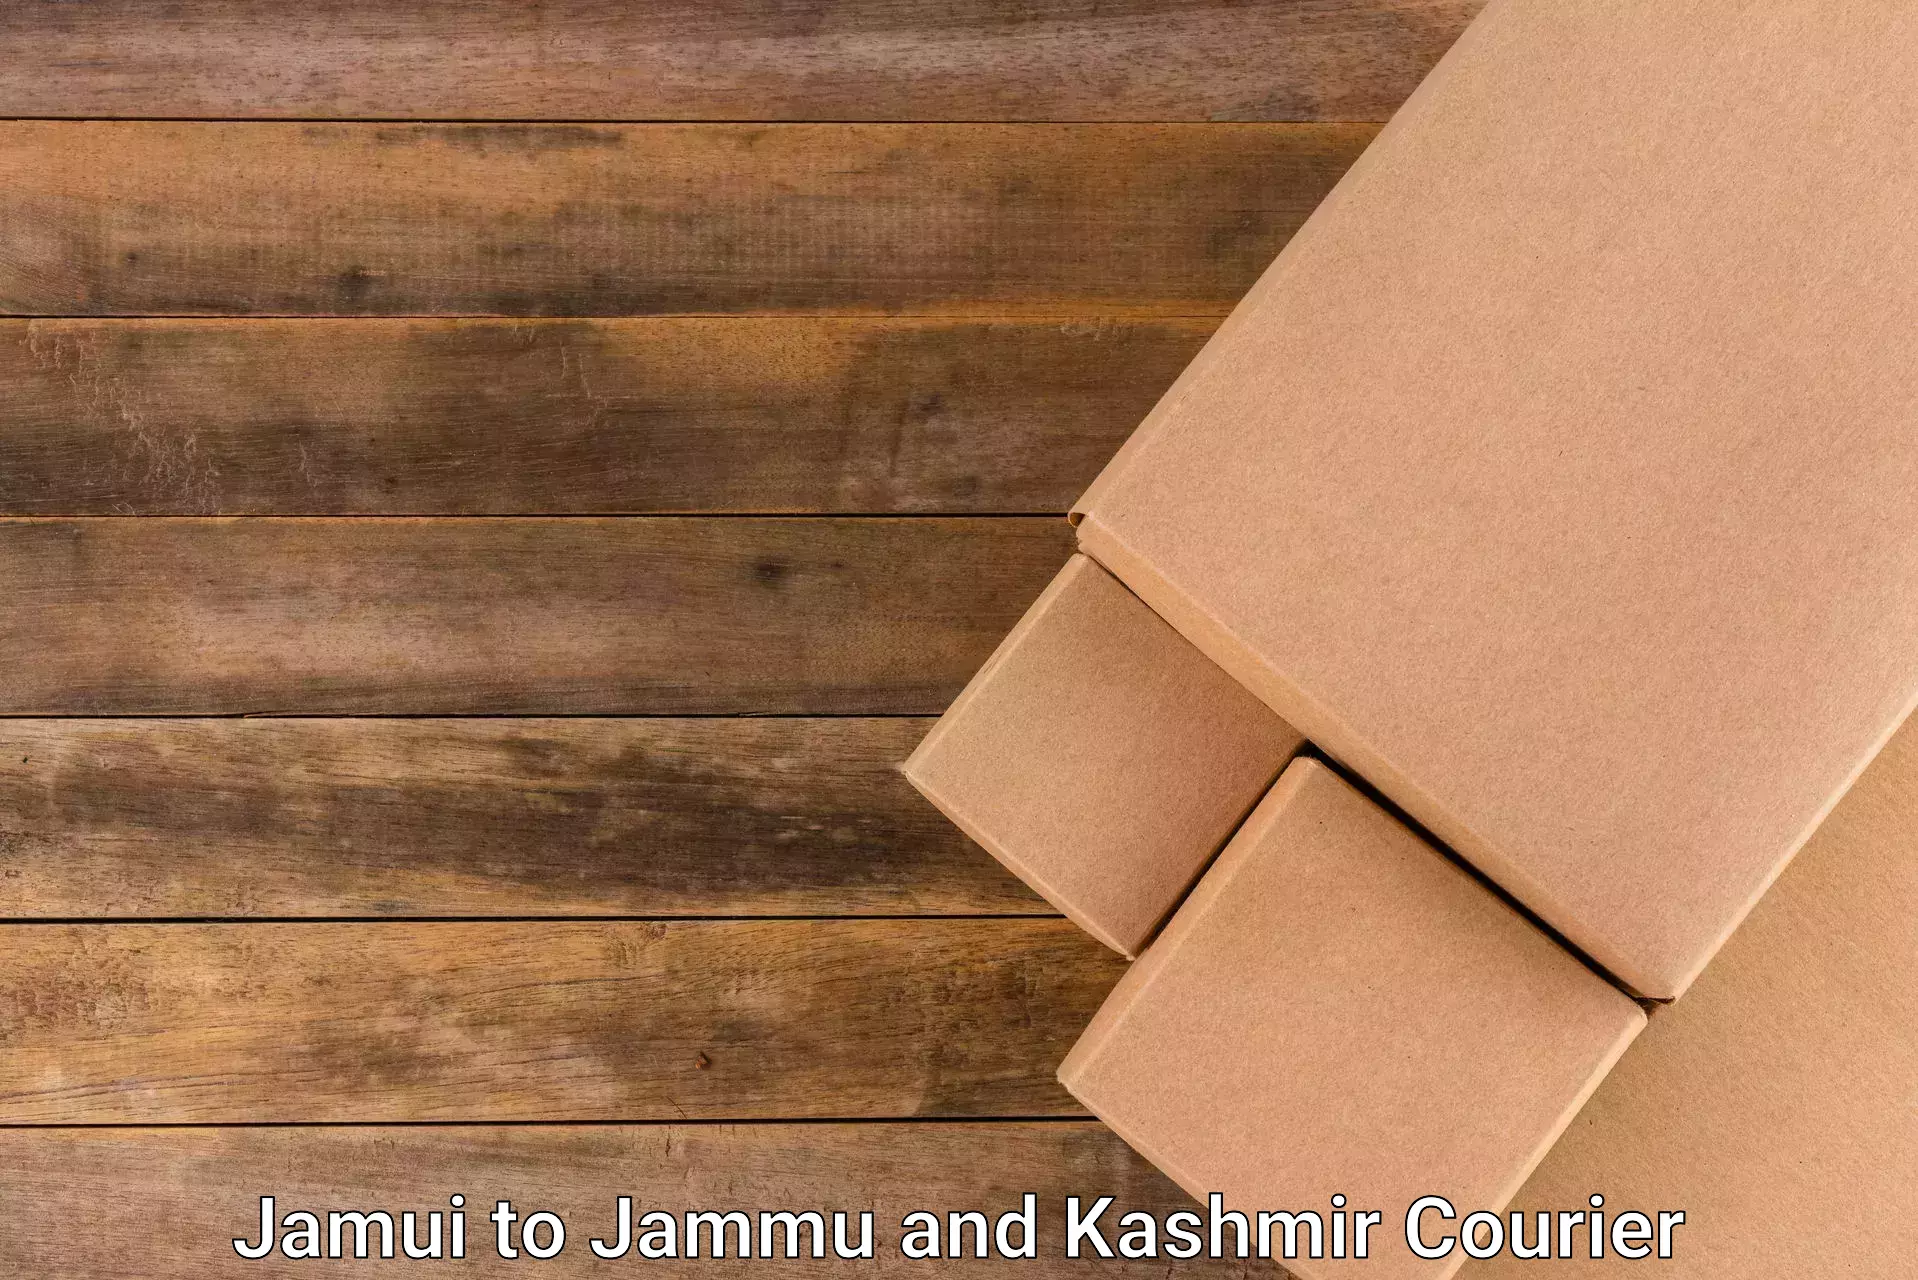 Package forwarding Jamui to Bhaderwah